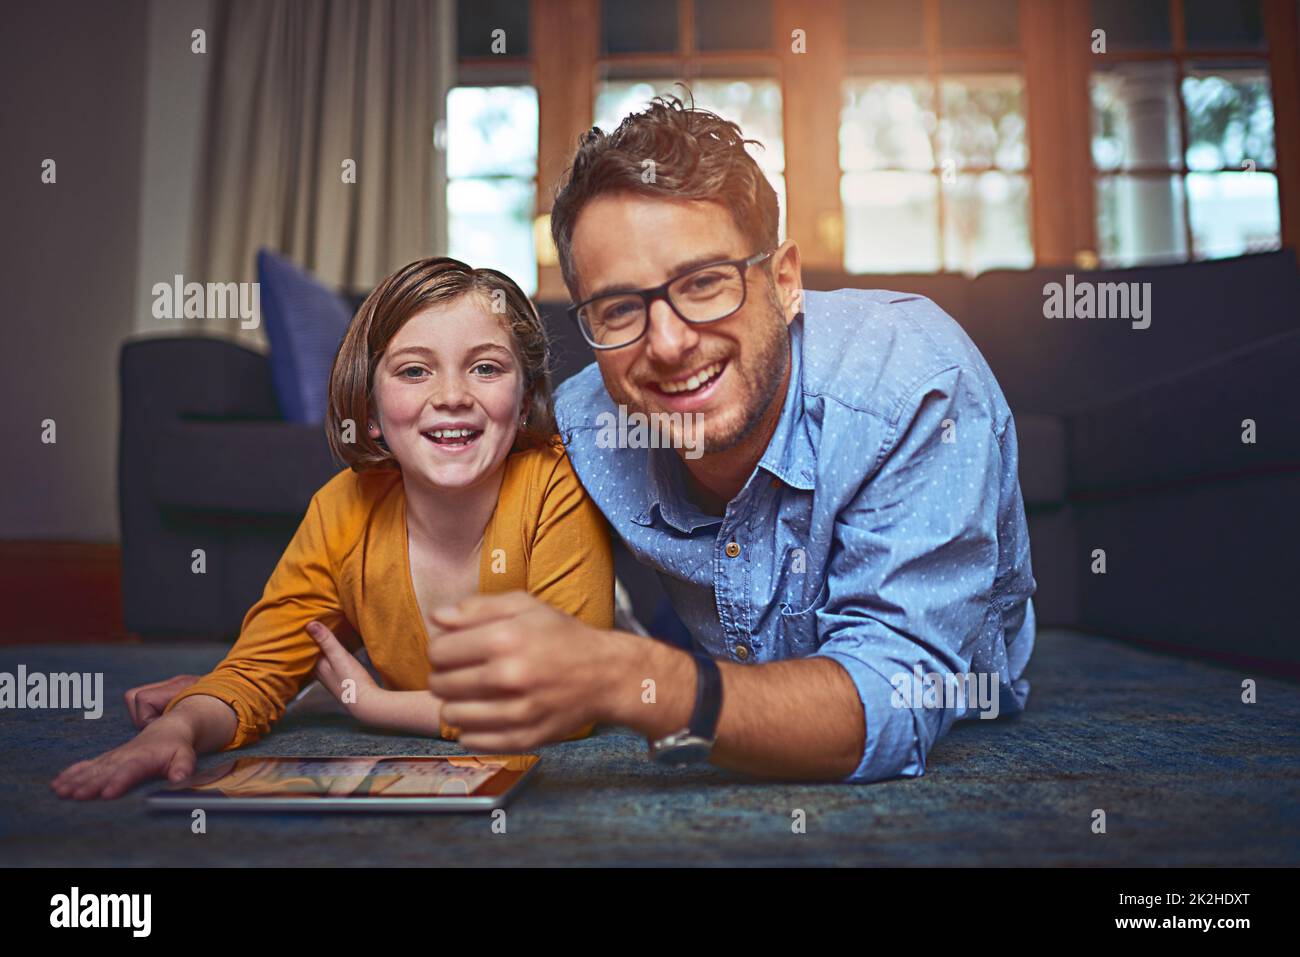 La mia bambina ama questa tecnologia. Girato di un padre e una figlia che si trovano sul pavimento e usando un tablet digitale insieme a casa. Foto Stock